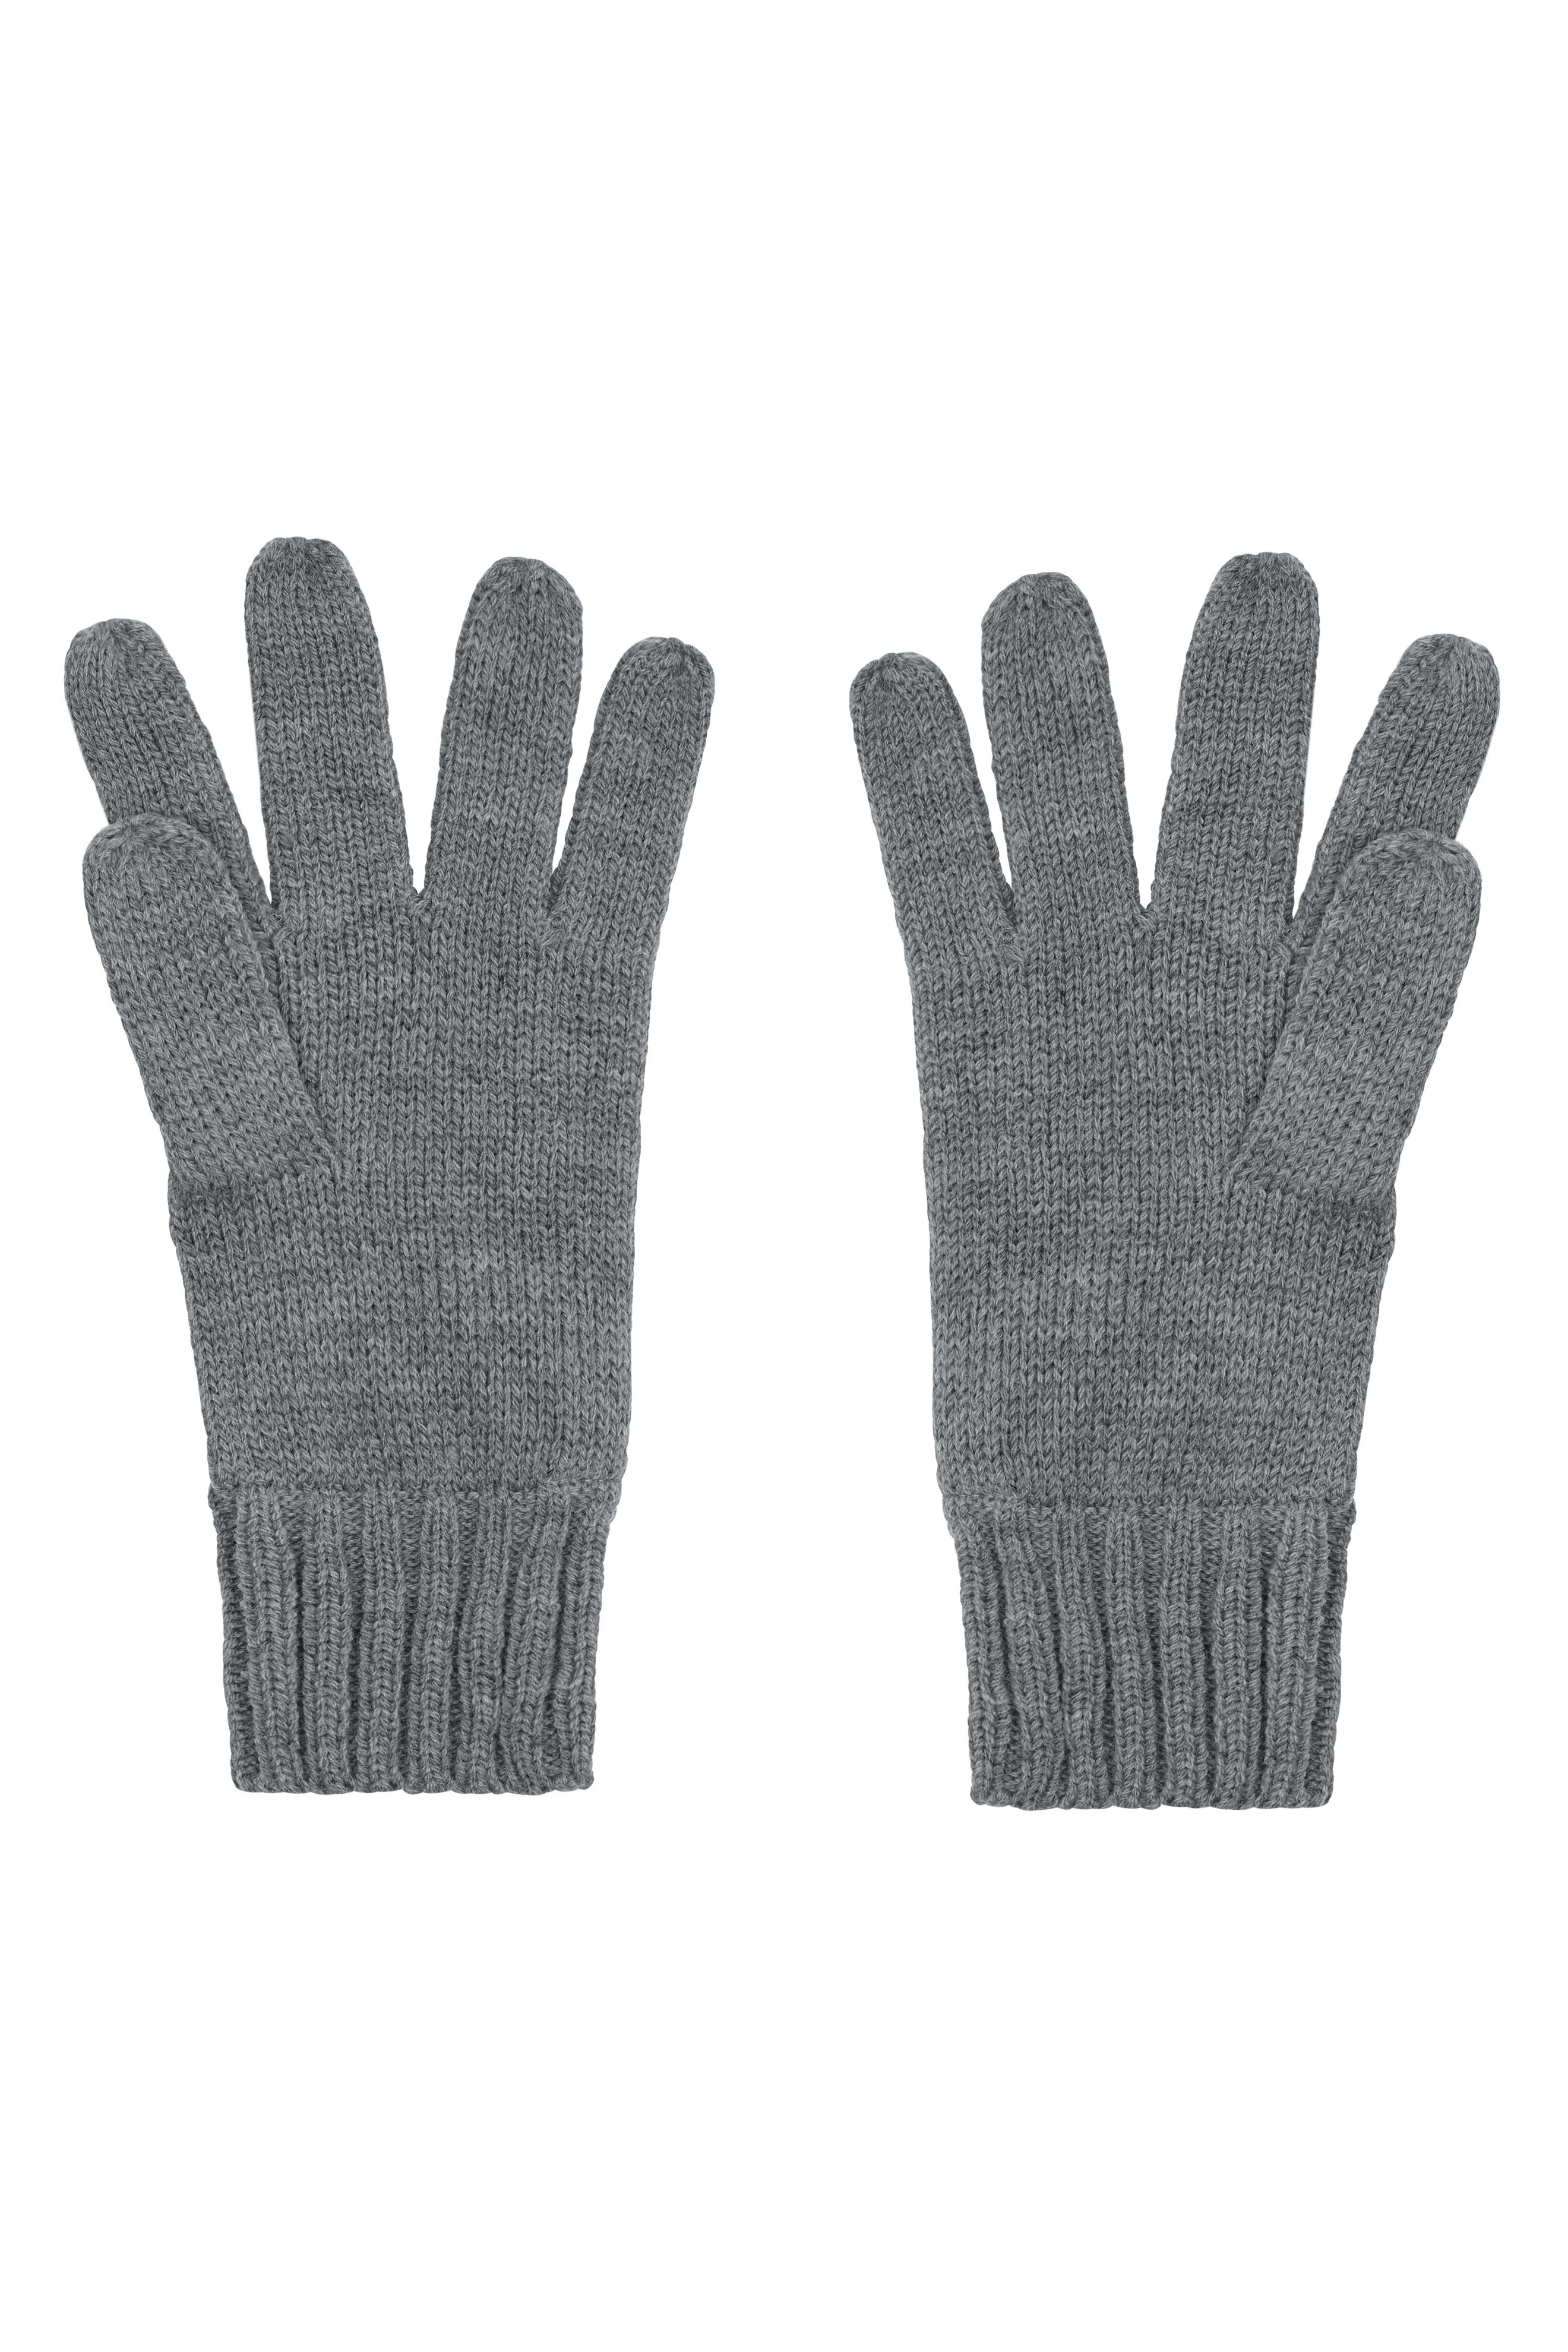 Knitted Gloves MB505 Strickhandschuhe mit gerippten Bündchen für Damen und Herren